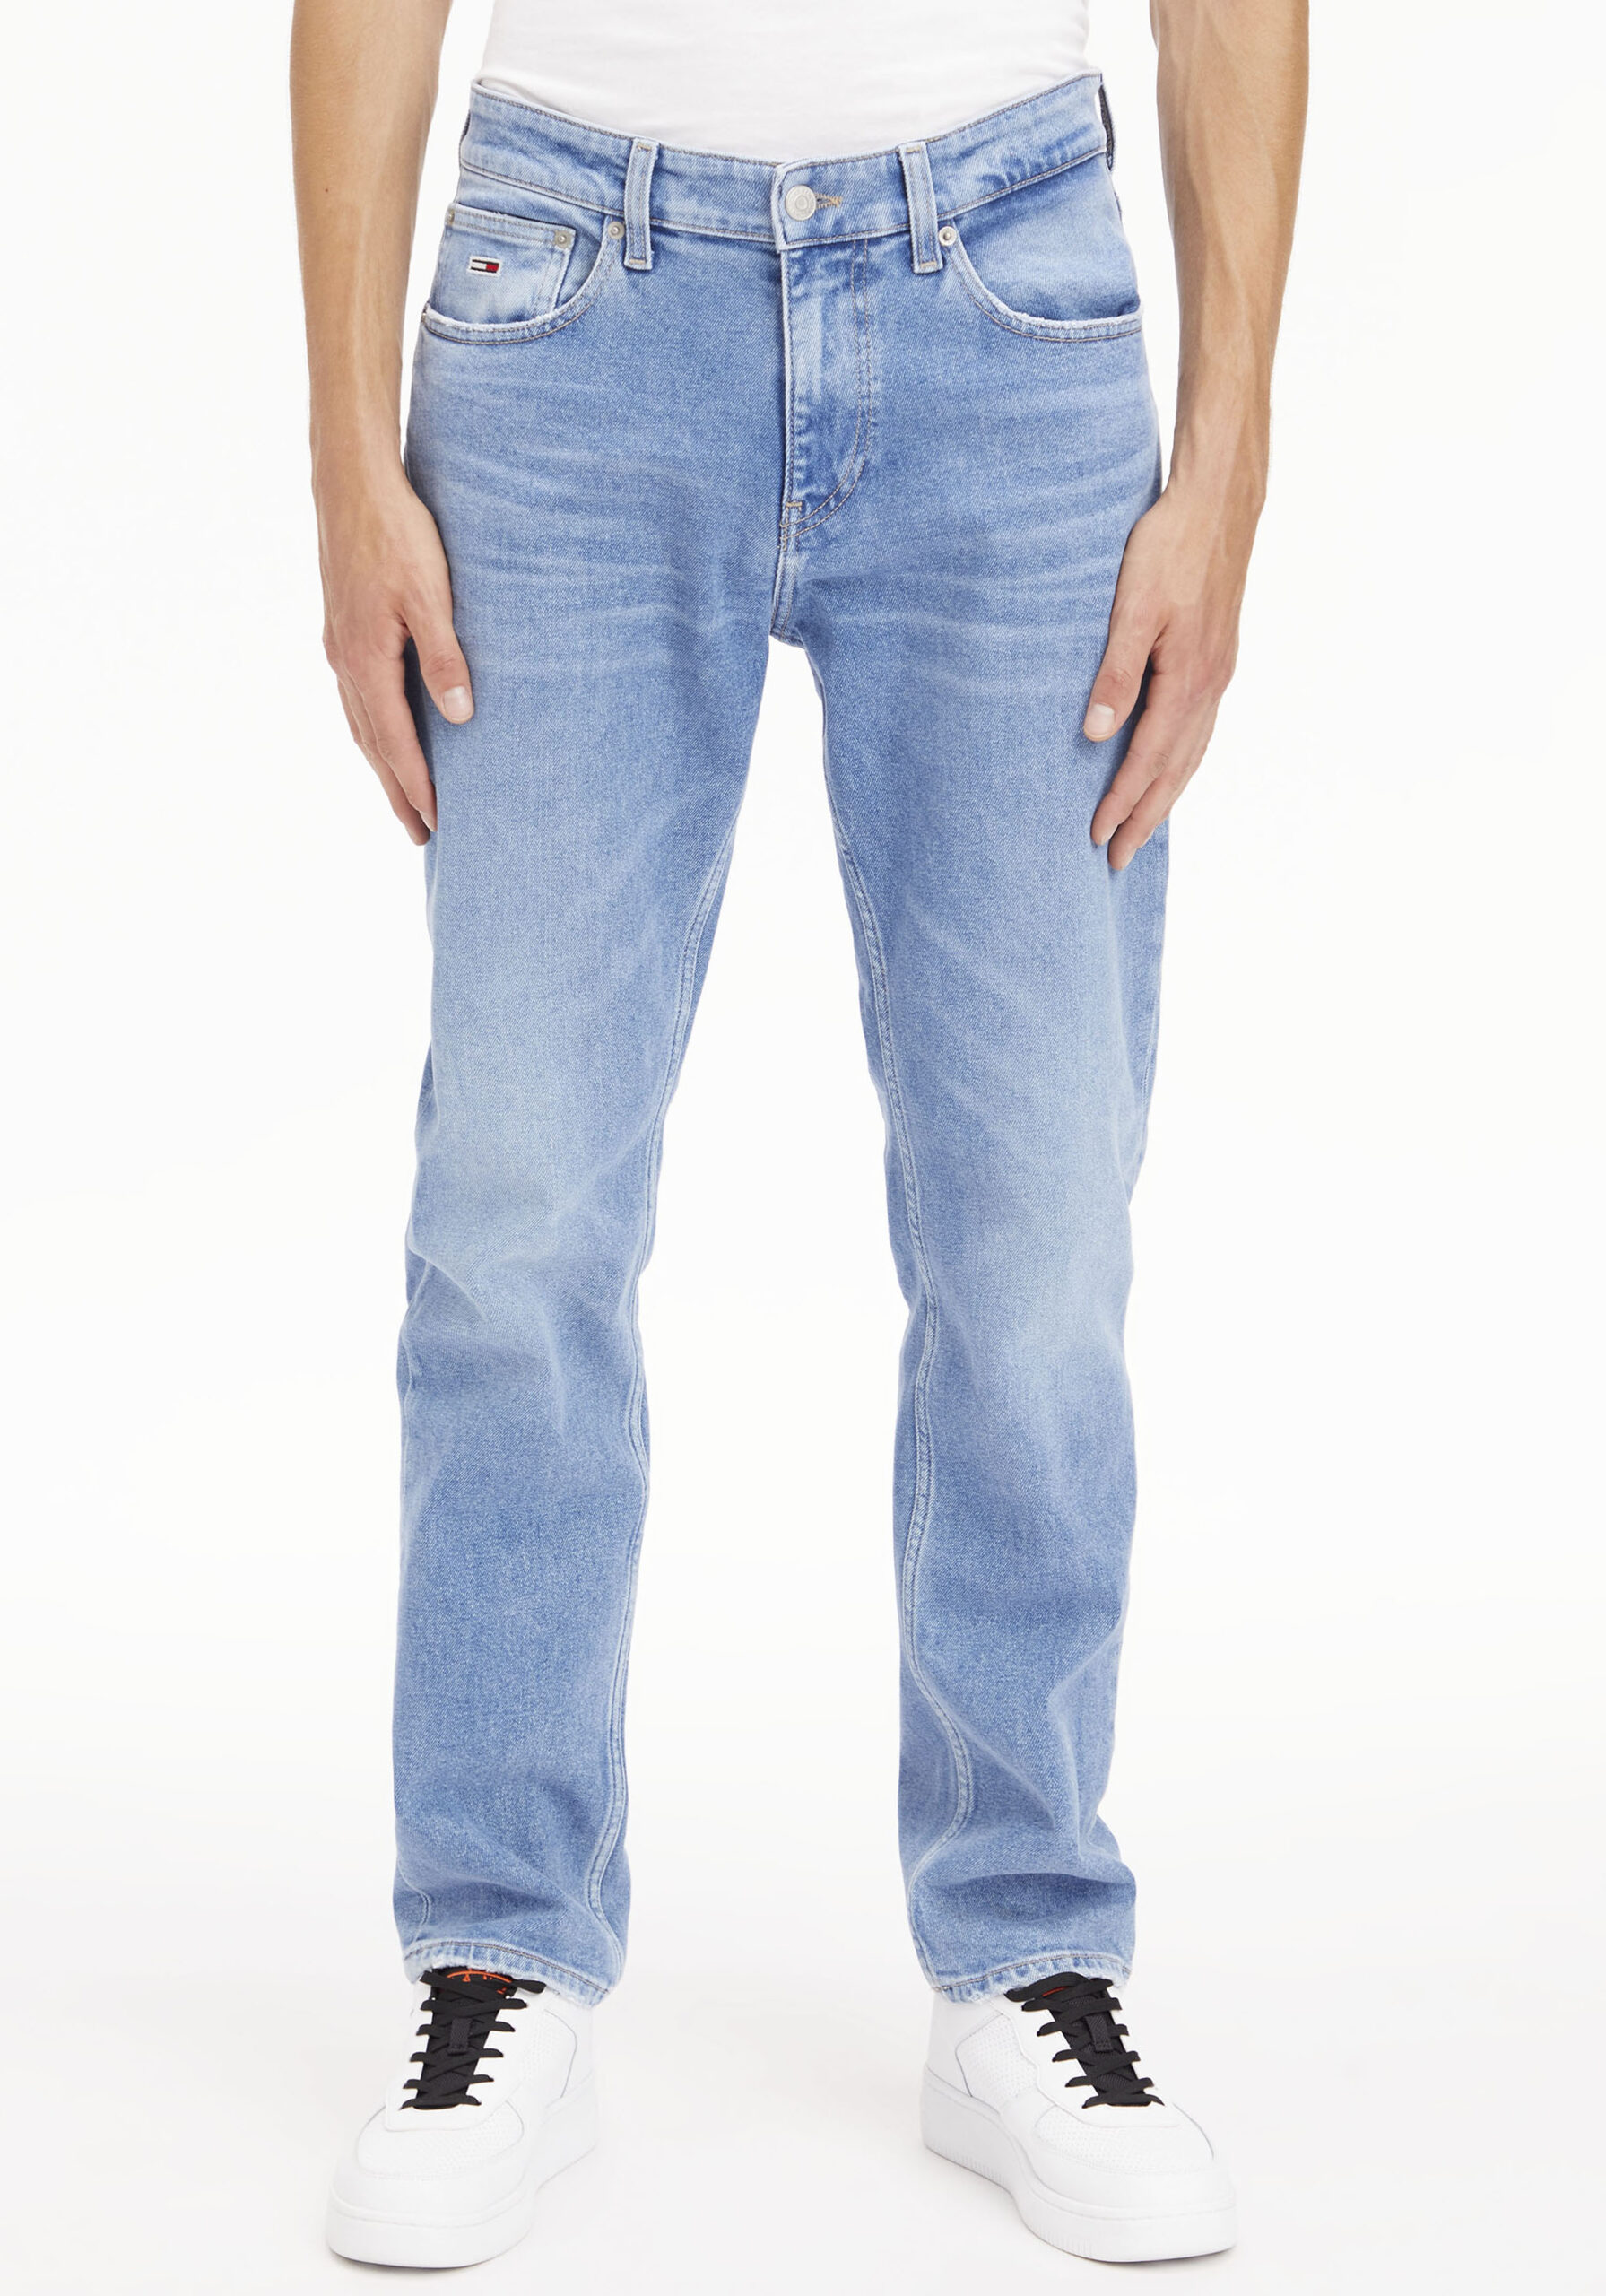 Tommy Jeans Jeansshorts “HOT PANT SHORT BG0036”, mit Destroyed- und Abriebeffekten